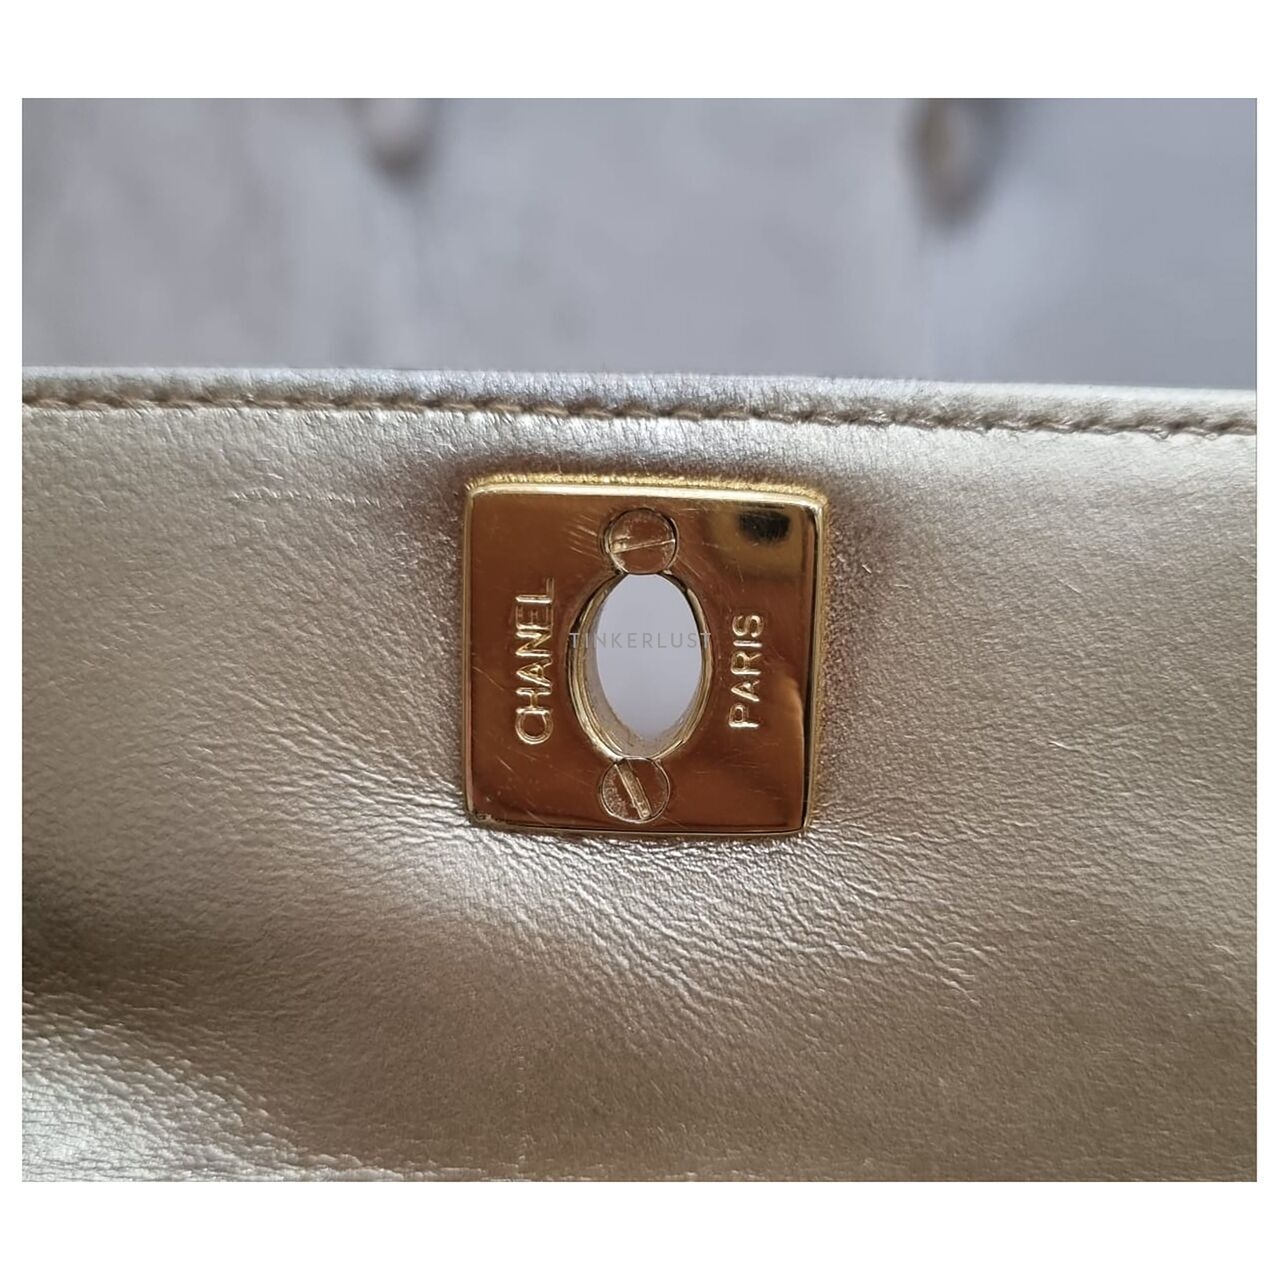 Chanel Vintage Gold GHW #3 Sling Bag